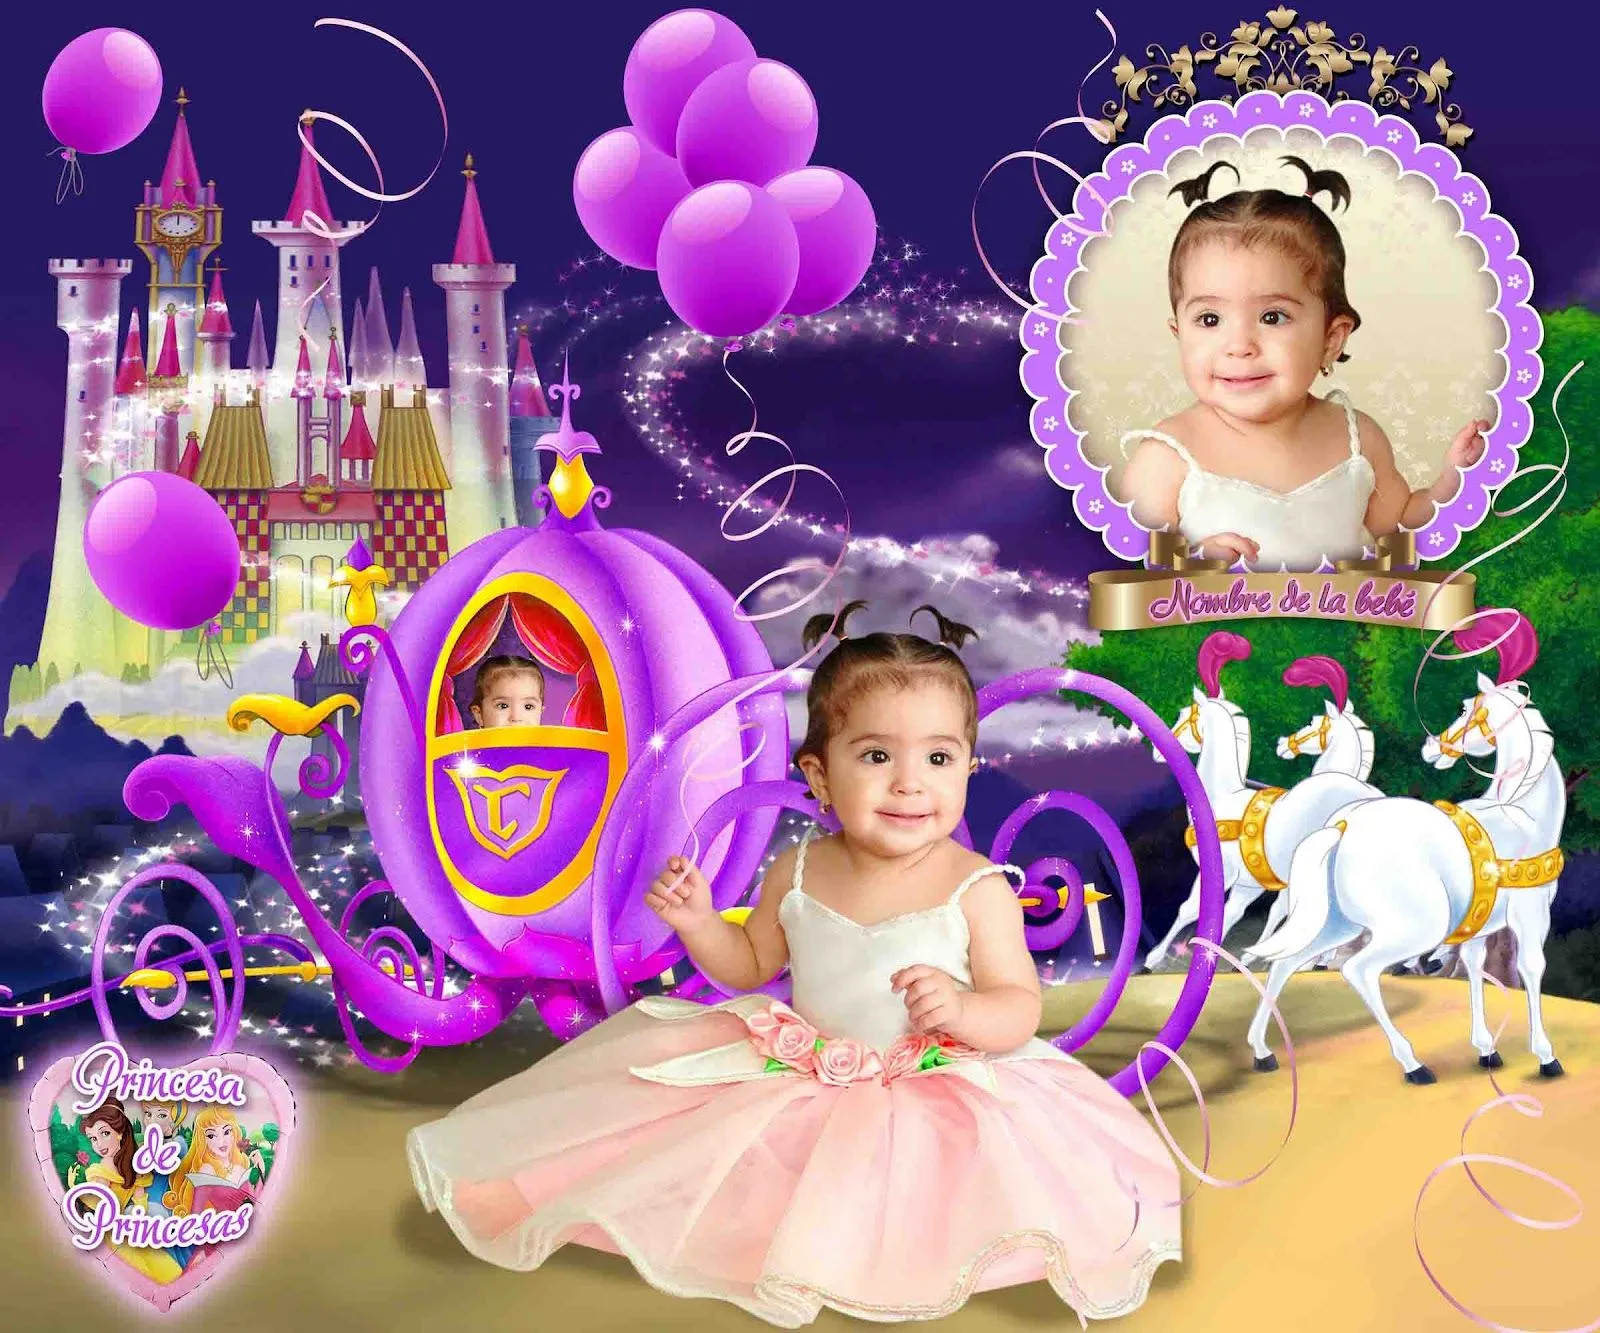 Princesa de princesas - Plantillas para photoshop 2016